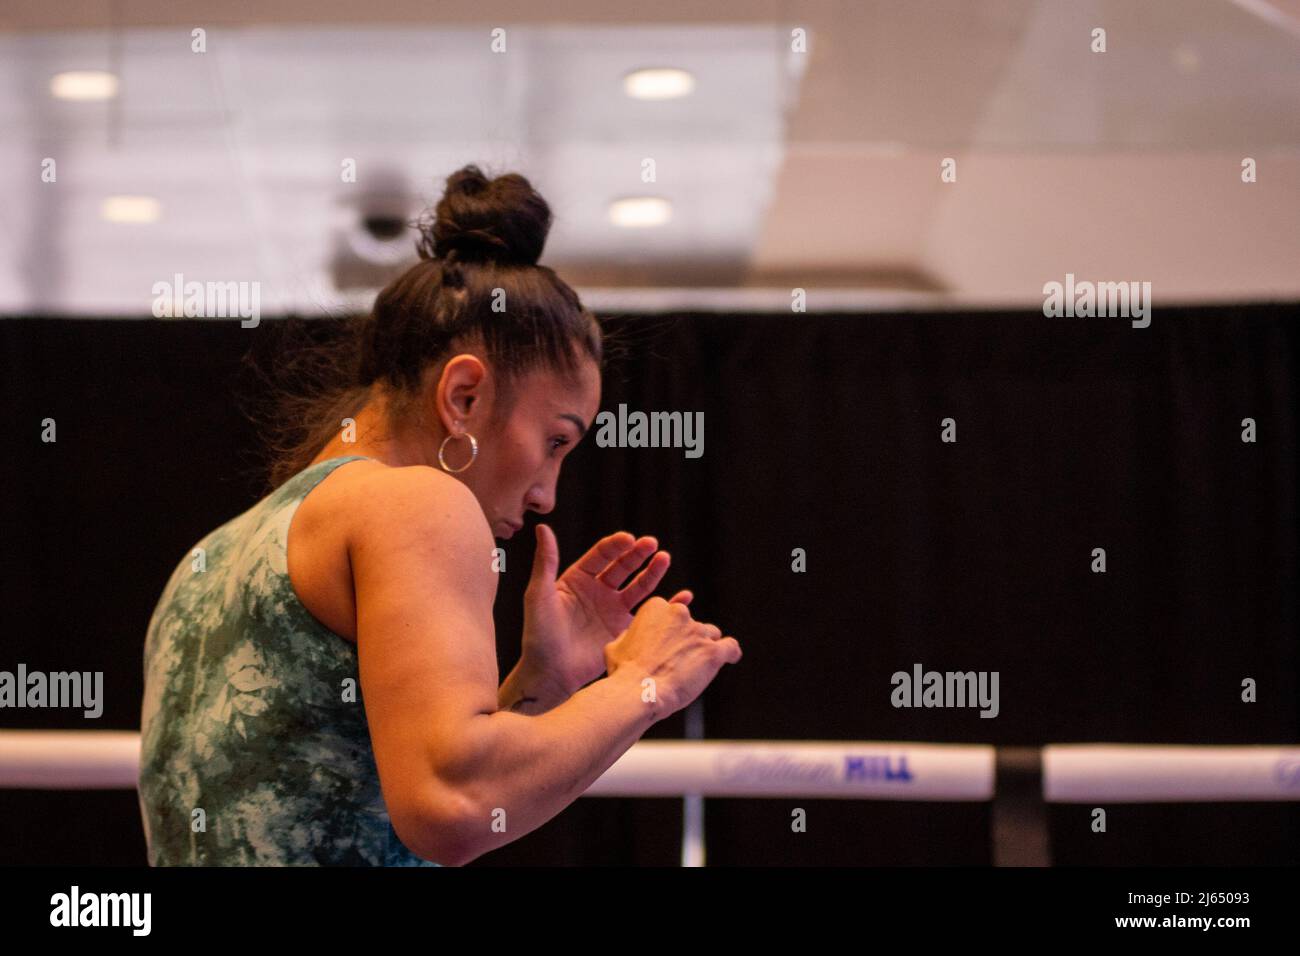 NUEVA YORK, NY - 27 DE ABRIL: Amanda Serrano durante los entrenamientos abiertos antes de su enfrentamiento con Katie Taylor en Madison Square Garden el 27 de abril de 2022 en Nueva York, NY, Estados Unidos. (Foto de Matt Davies/PxImages) Crédito: PX Images/Alamy Live News Foto de stock